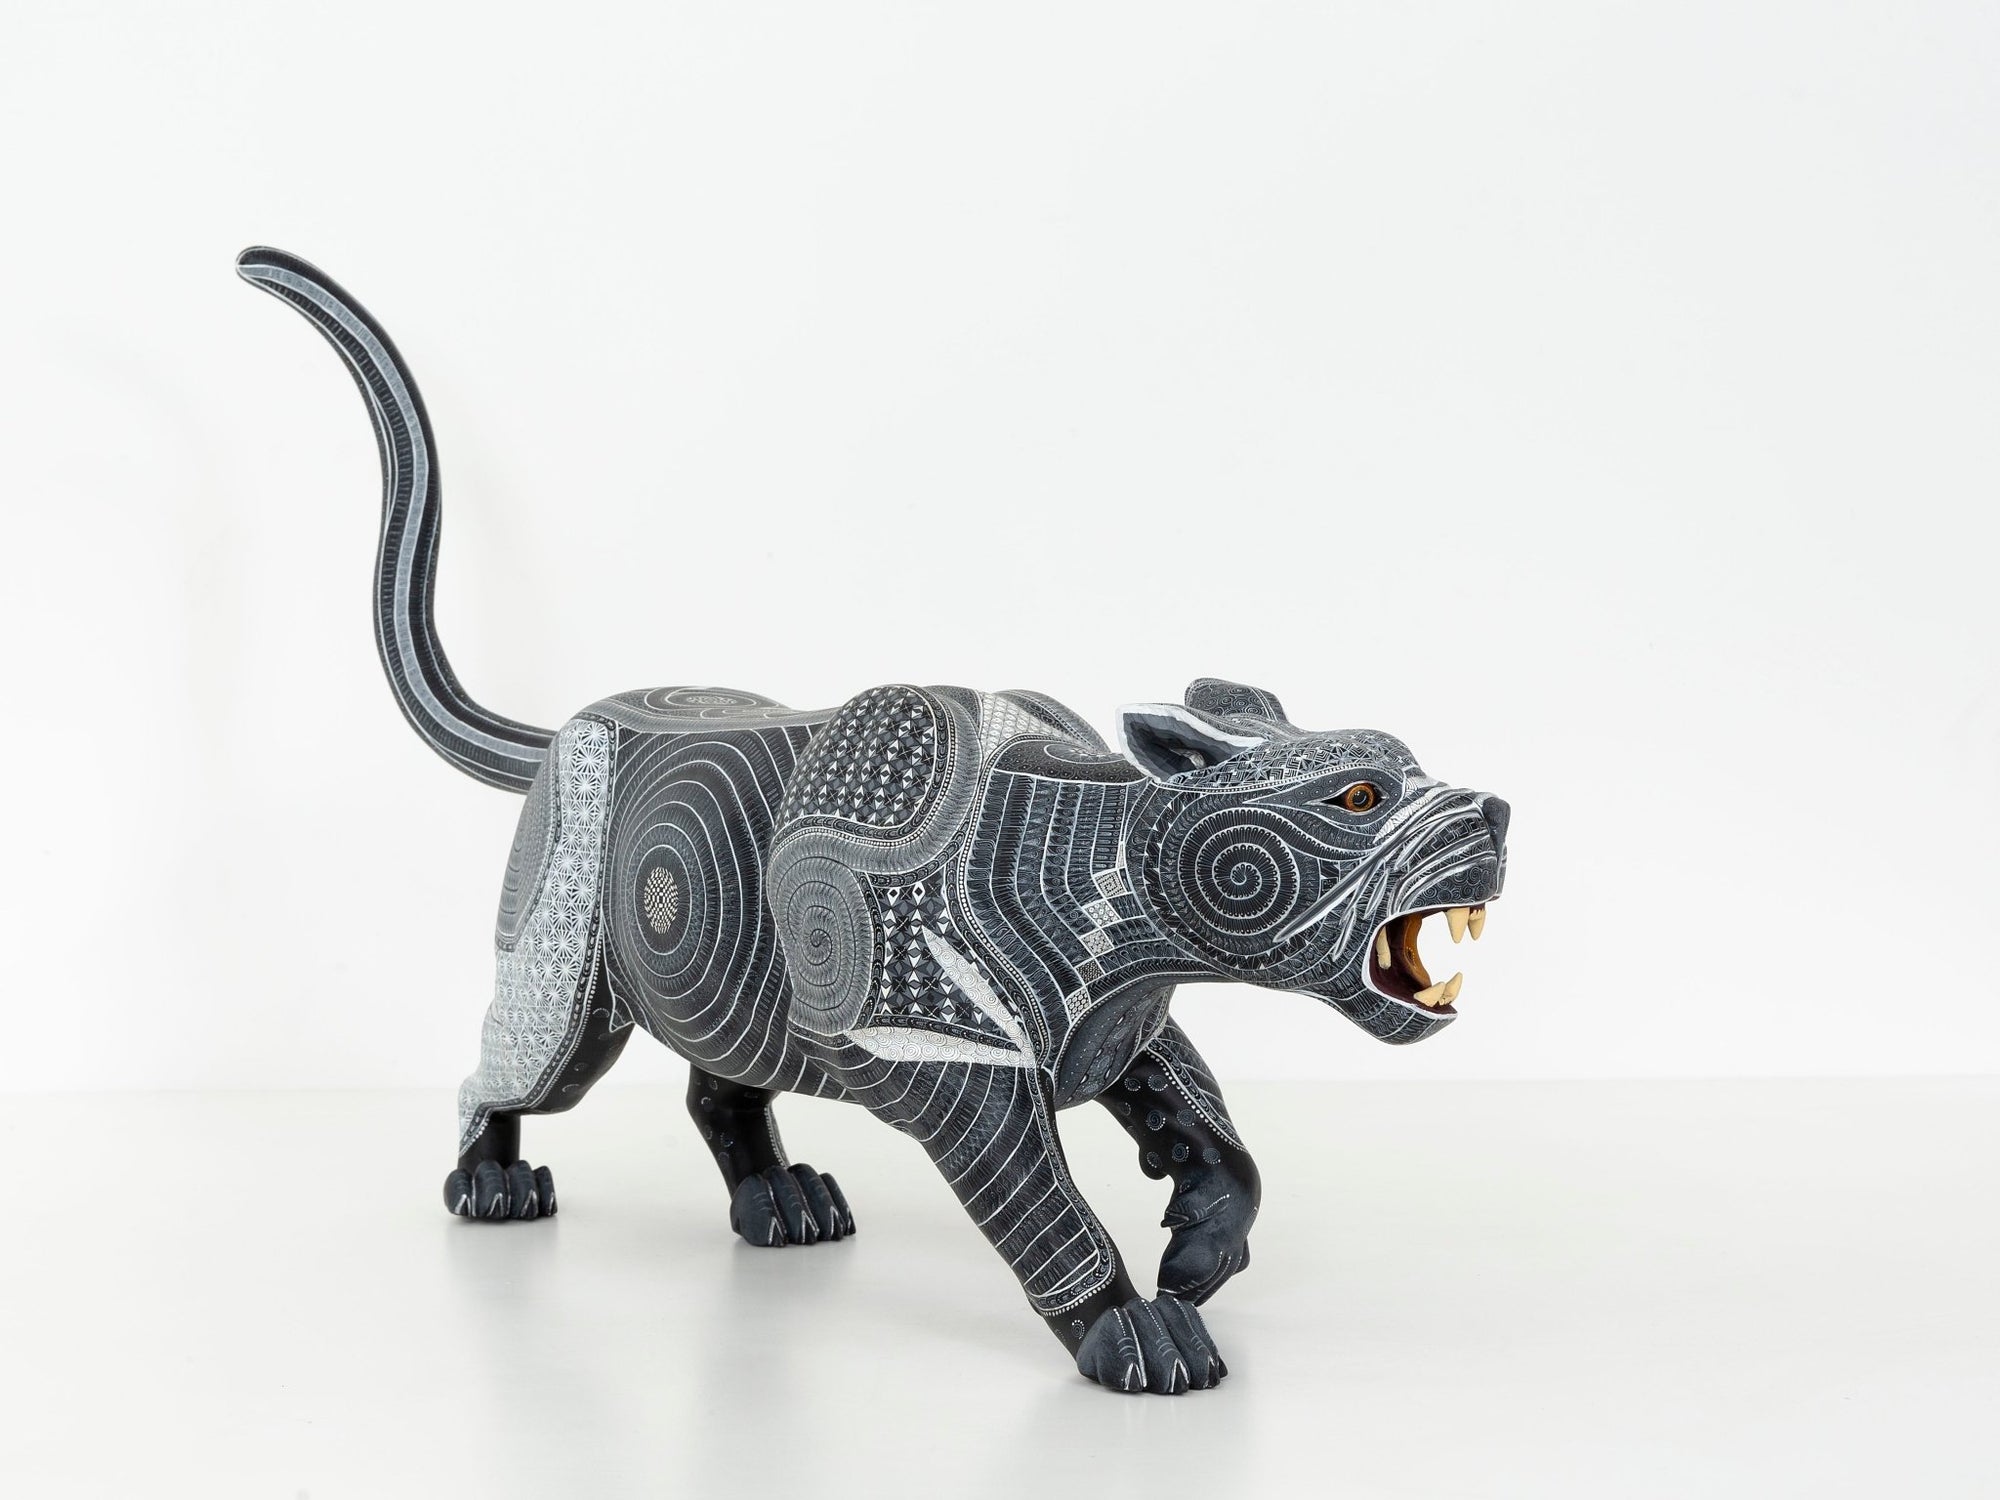 Alebrije – Nazahui Jaguar – Huichol-Kunst – Marakame